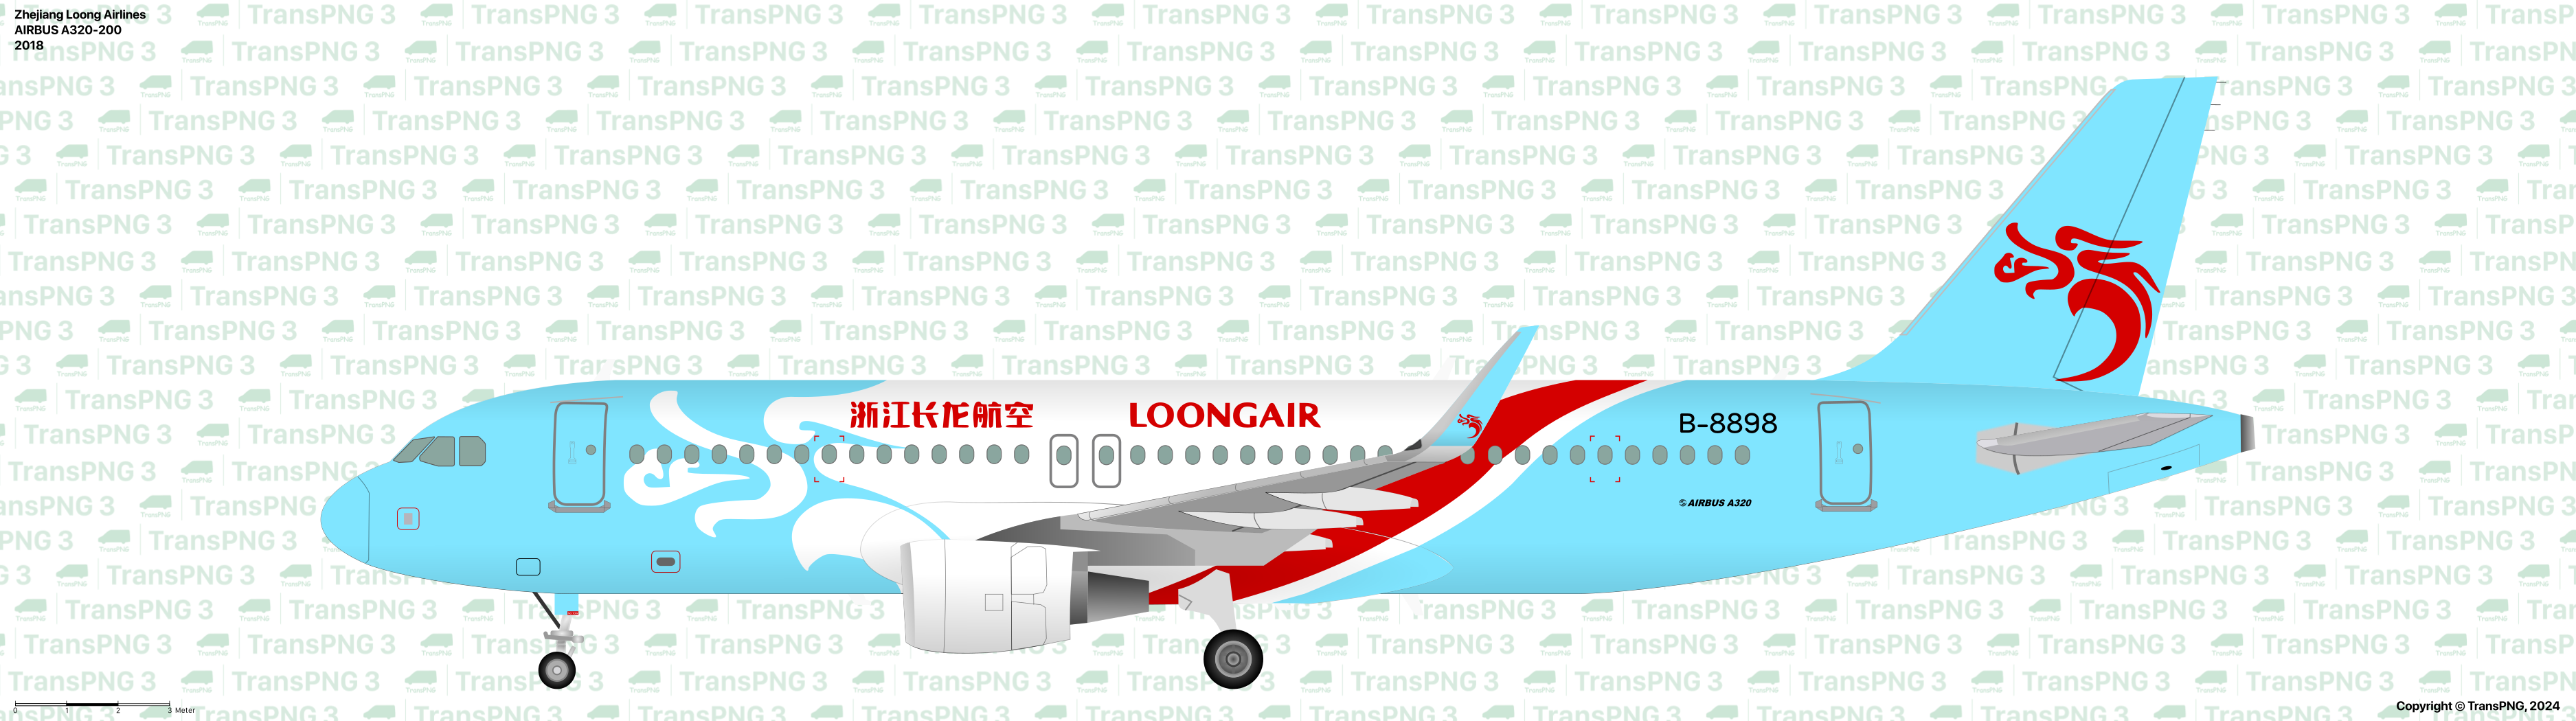 TransPNG | 分享世界各地多种交通工具的优秀绘图 - 客机 53682905407_0fb31b3fa7_o